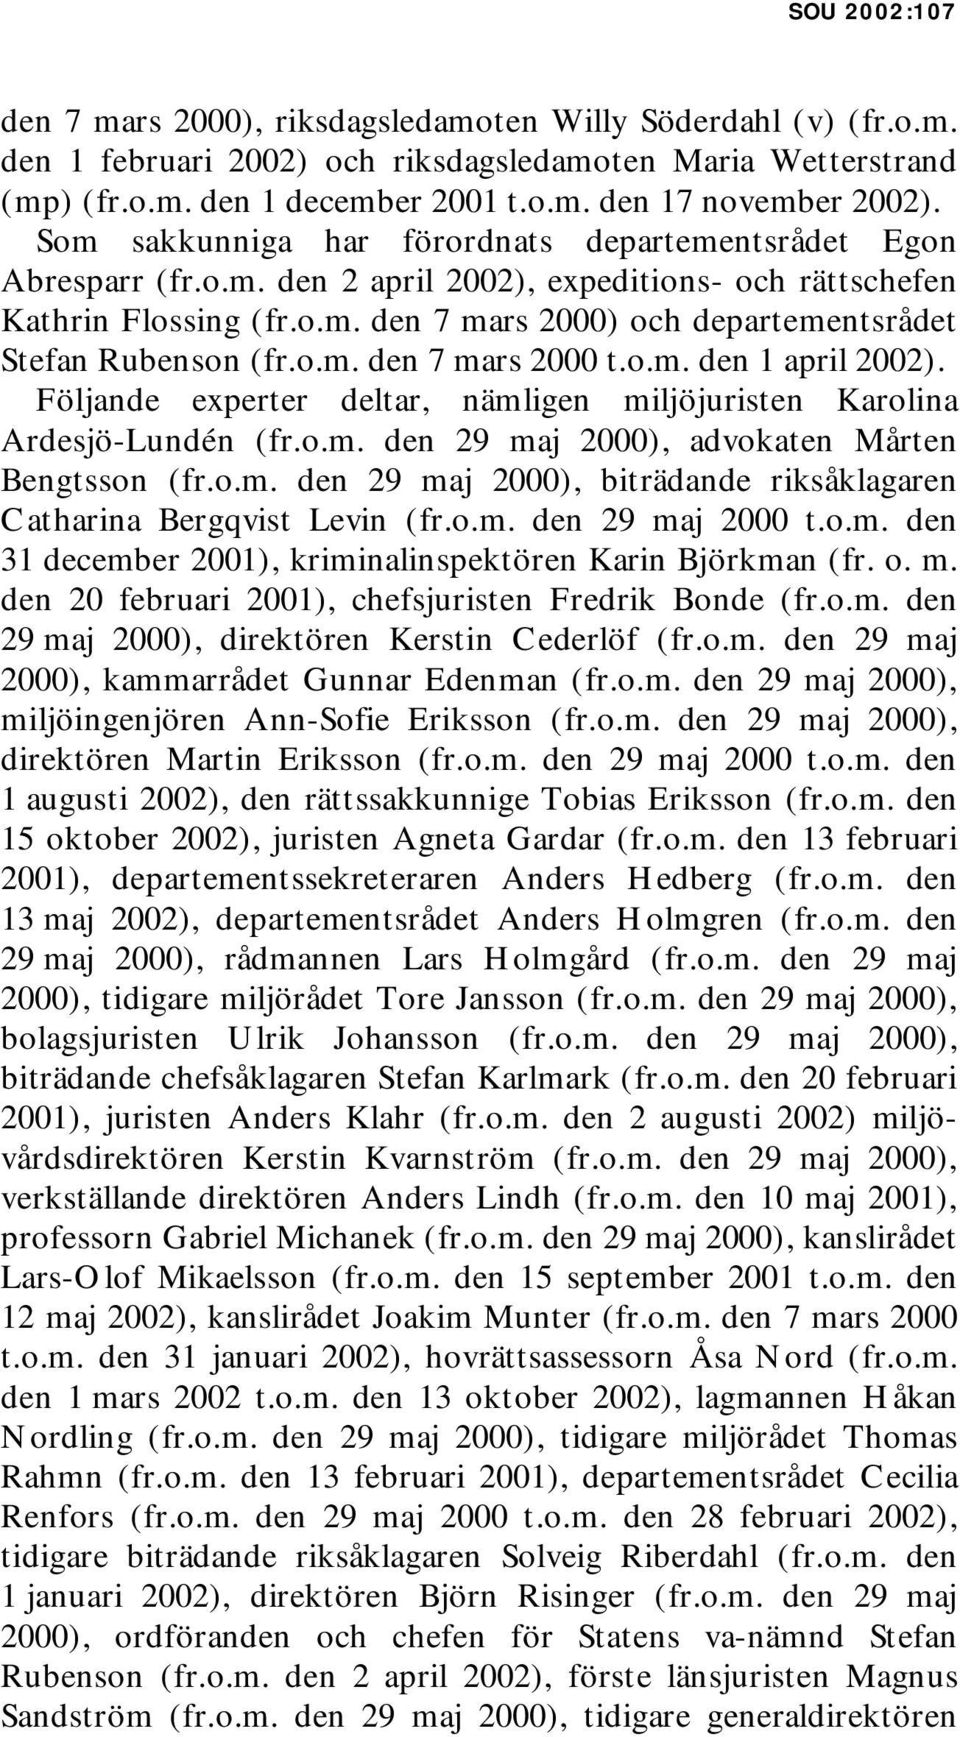 o.m. den 7 mars 2000 t.o.m. den 1 april 2002). Följande experter deltar, nämligen miljöjuristen Karolina Ardesjö-Lundén (fr.o.m. den 29 maj 2000), advokaten Mårten Bengtsson (fr.o.m. den 29 maj 2000), biträdande riksåklagaren Catharina Bergqvist Levin (fr.